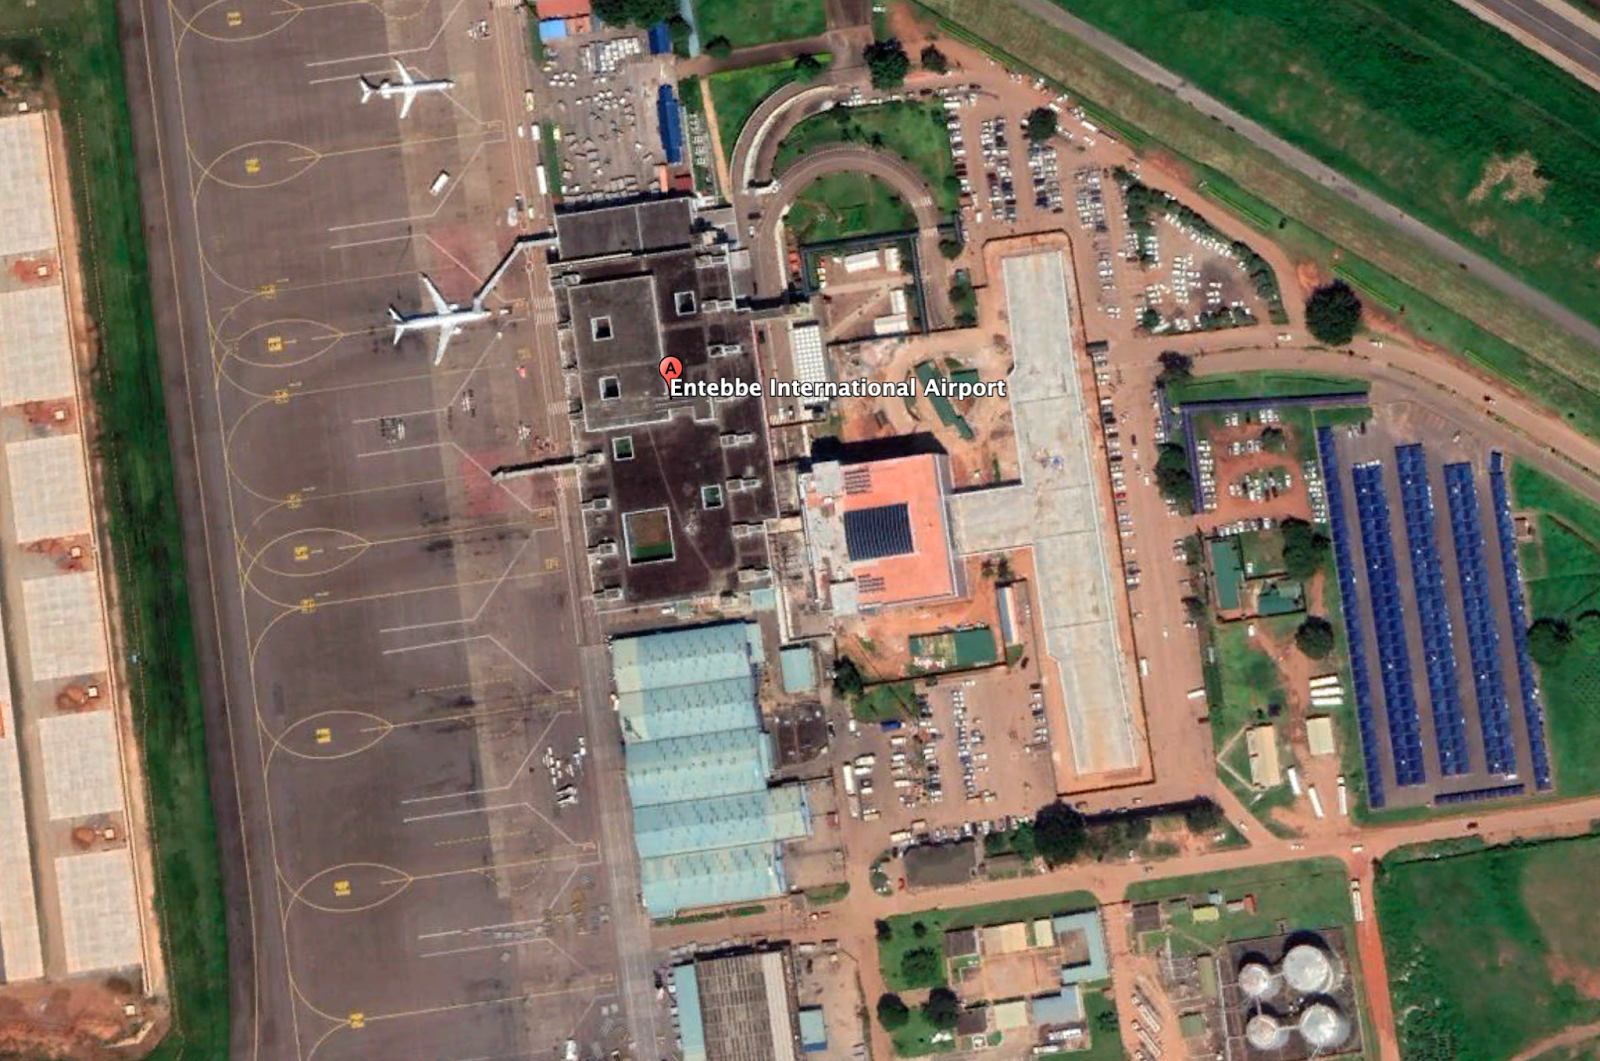 Google earth image of Entebbe airport, Uganda